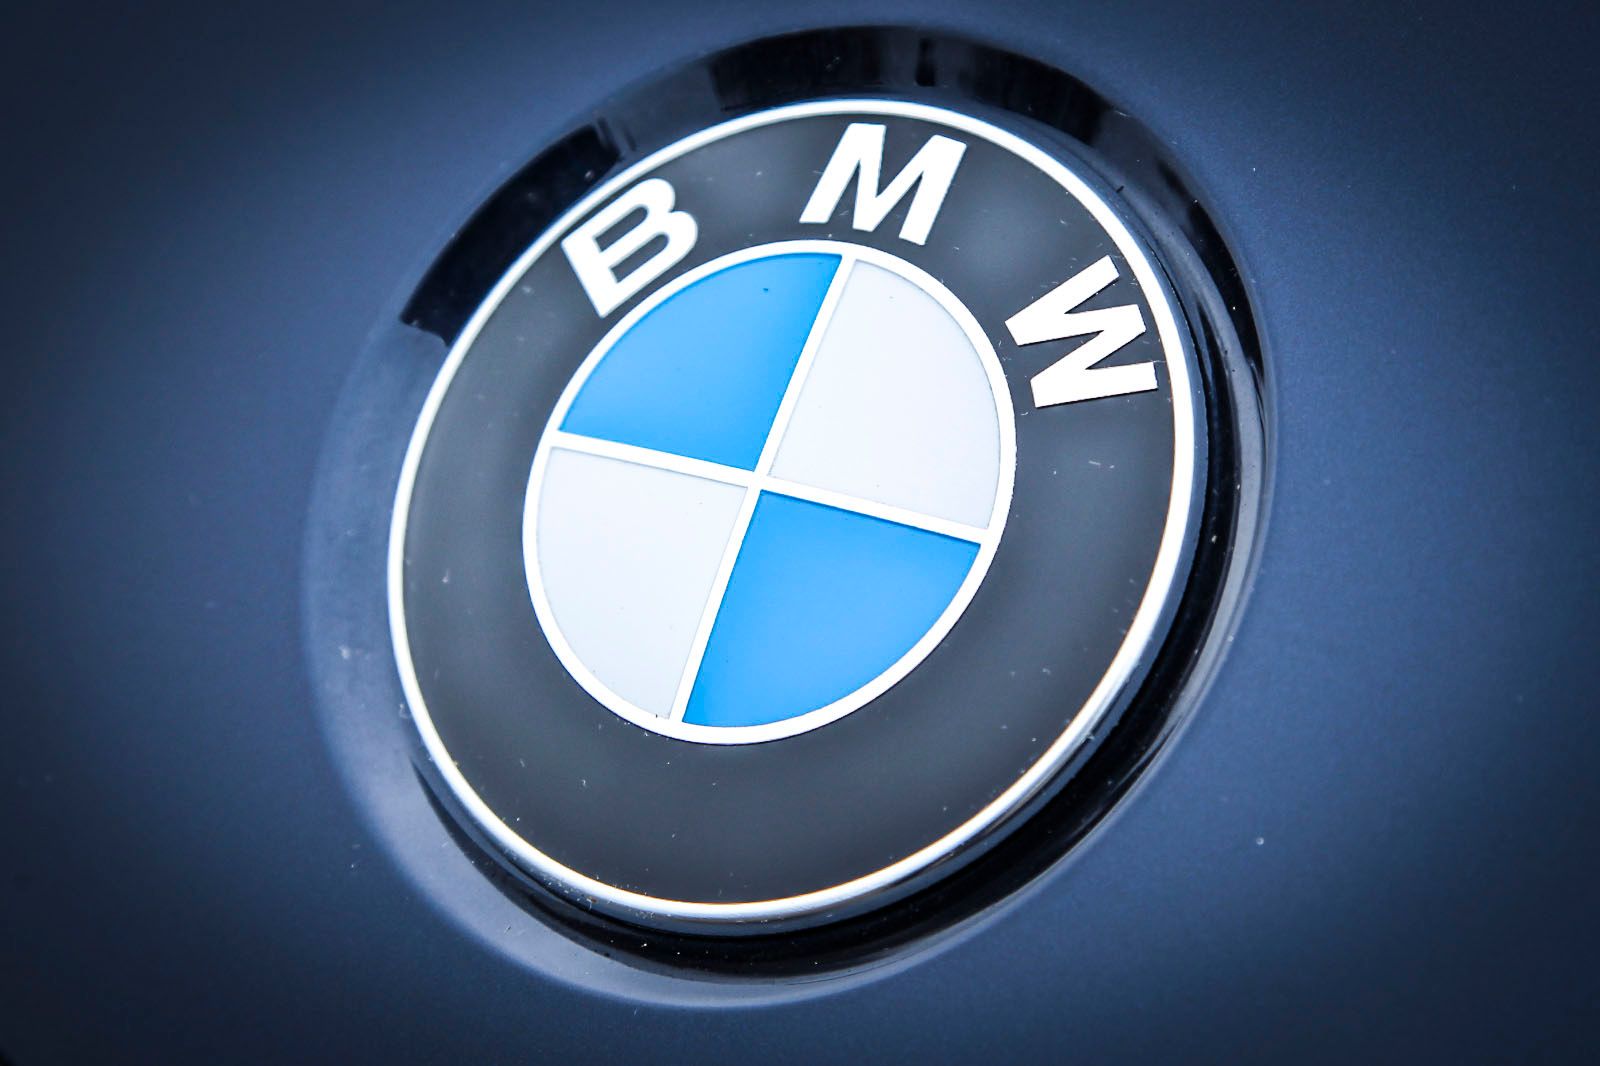 BMW logo on car